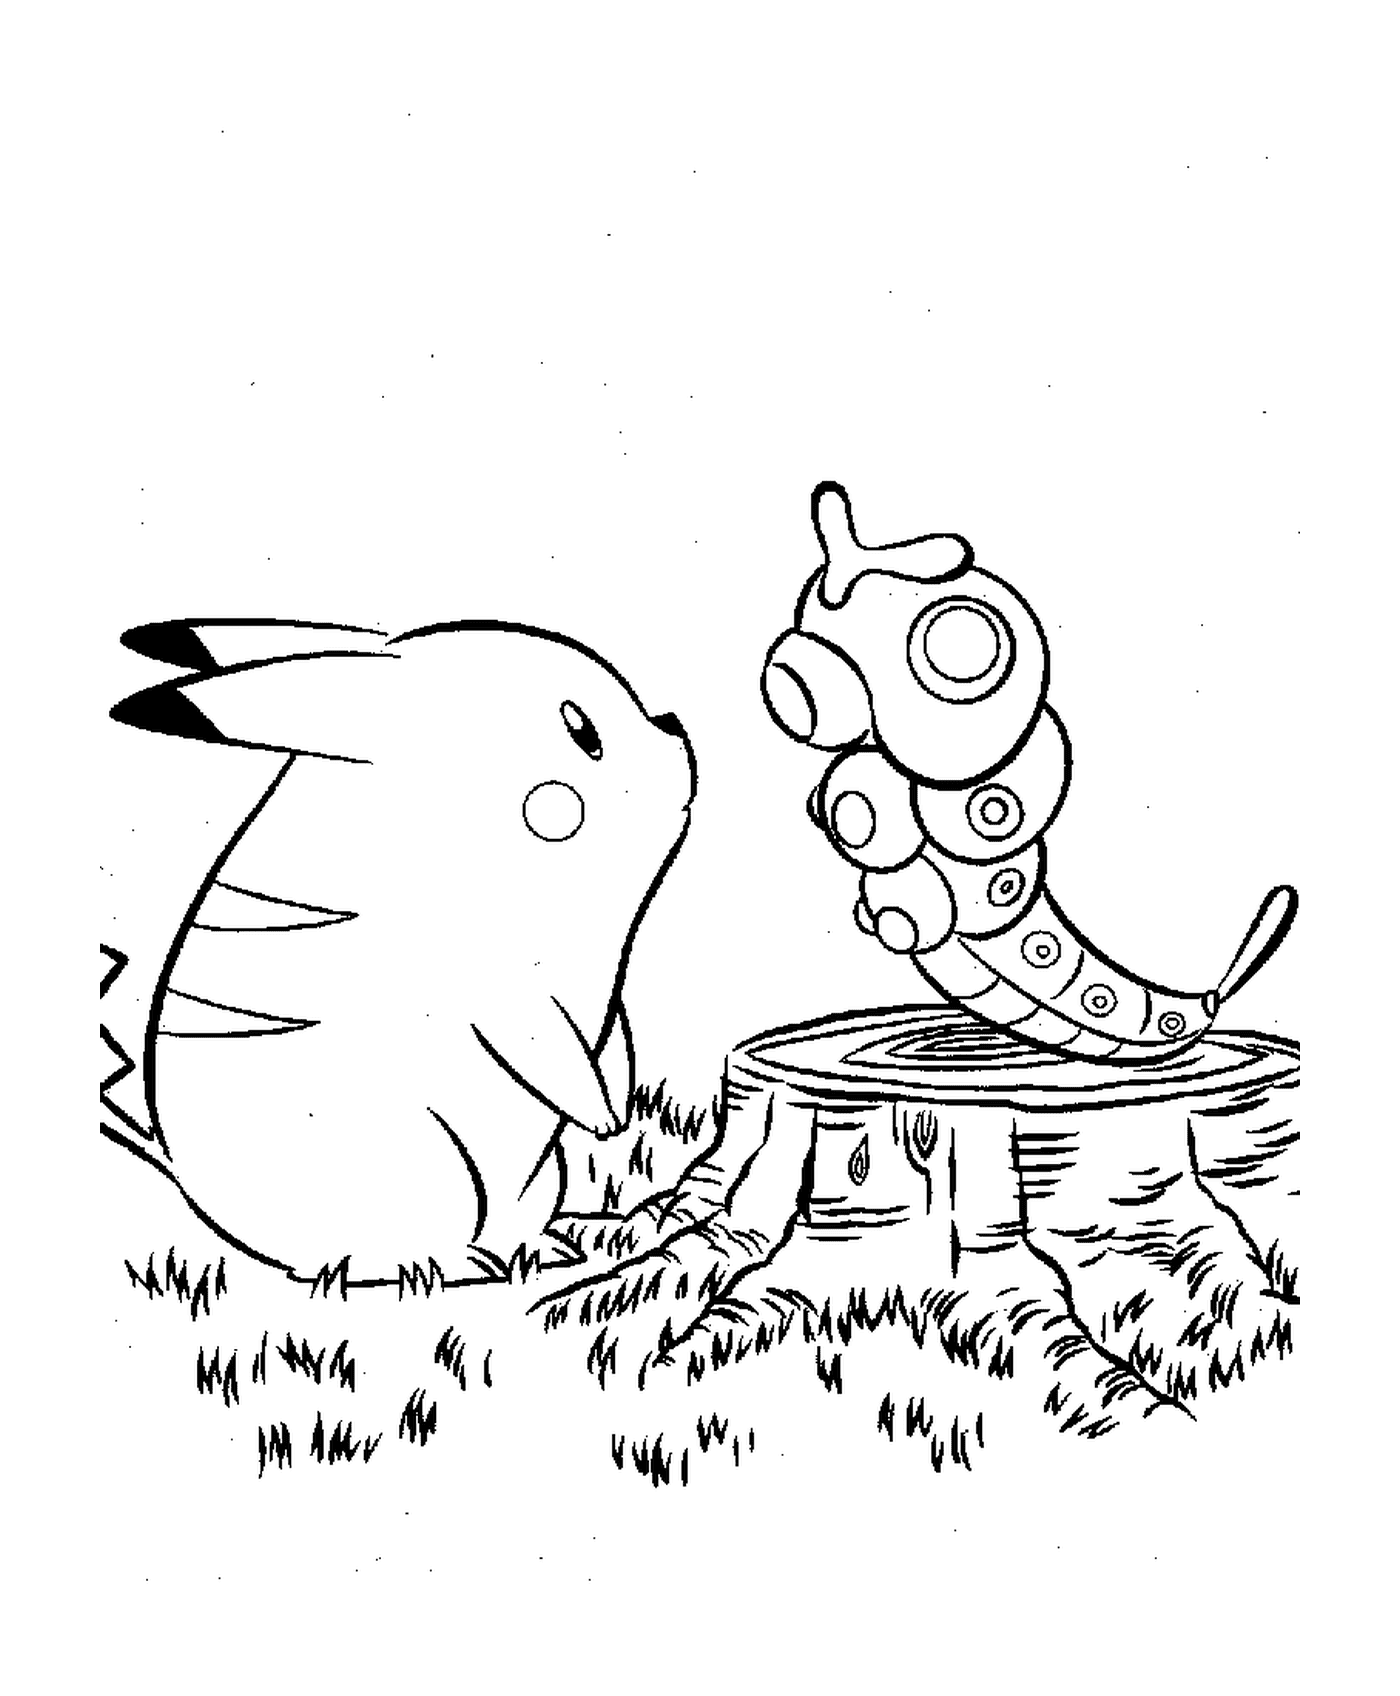  Pikachu acompanhado por um inseto 